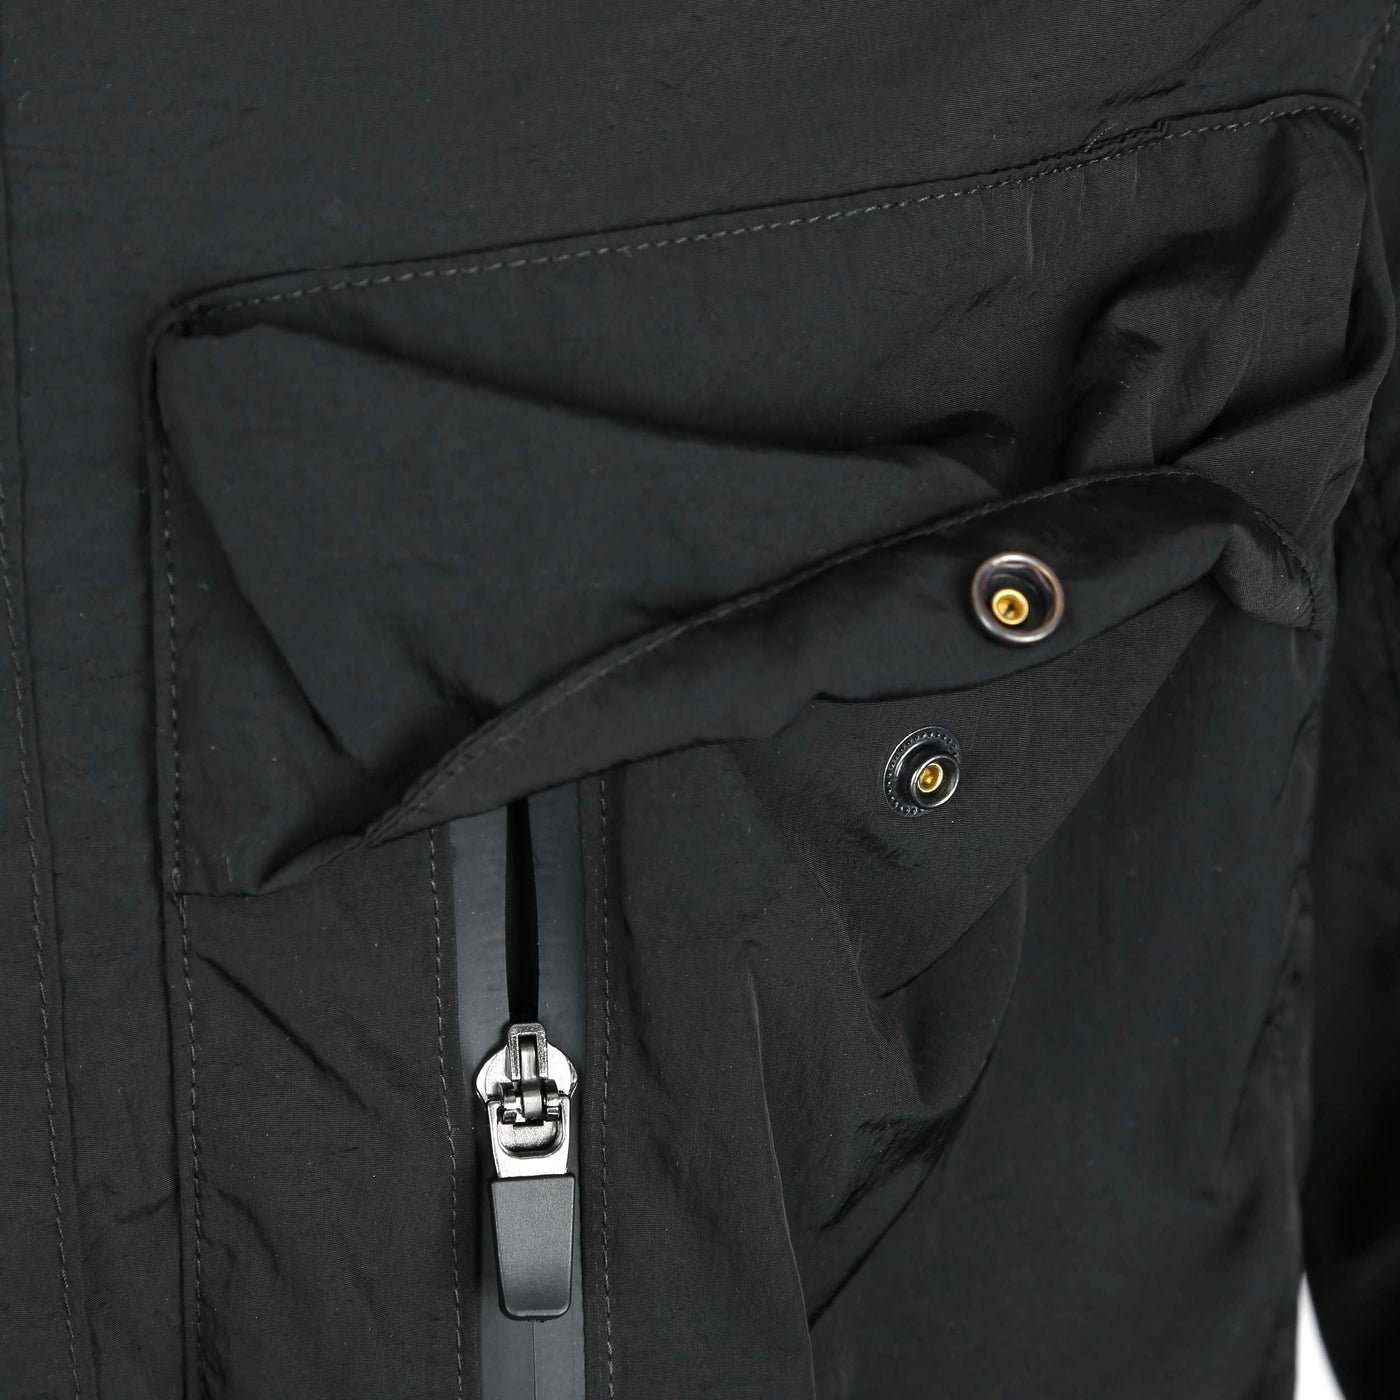 Belstaff Rift Overshirt in Black Zip